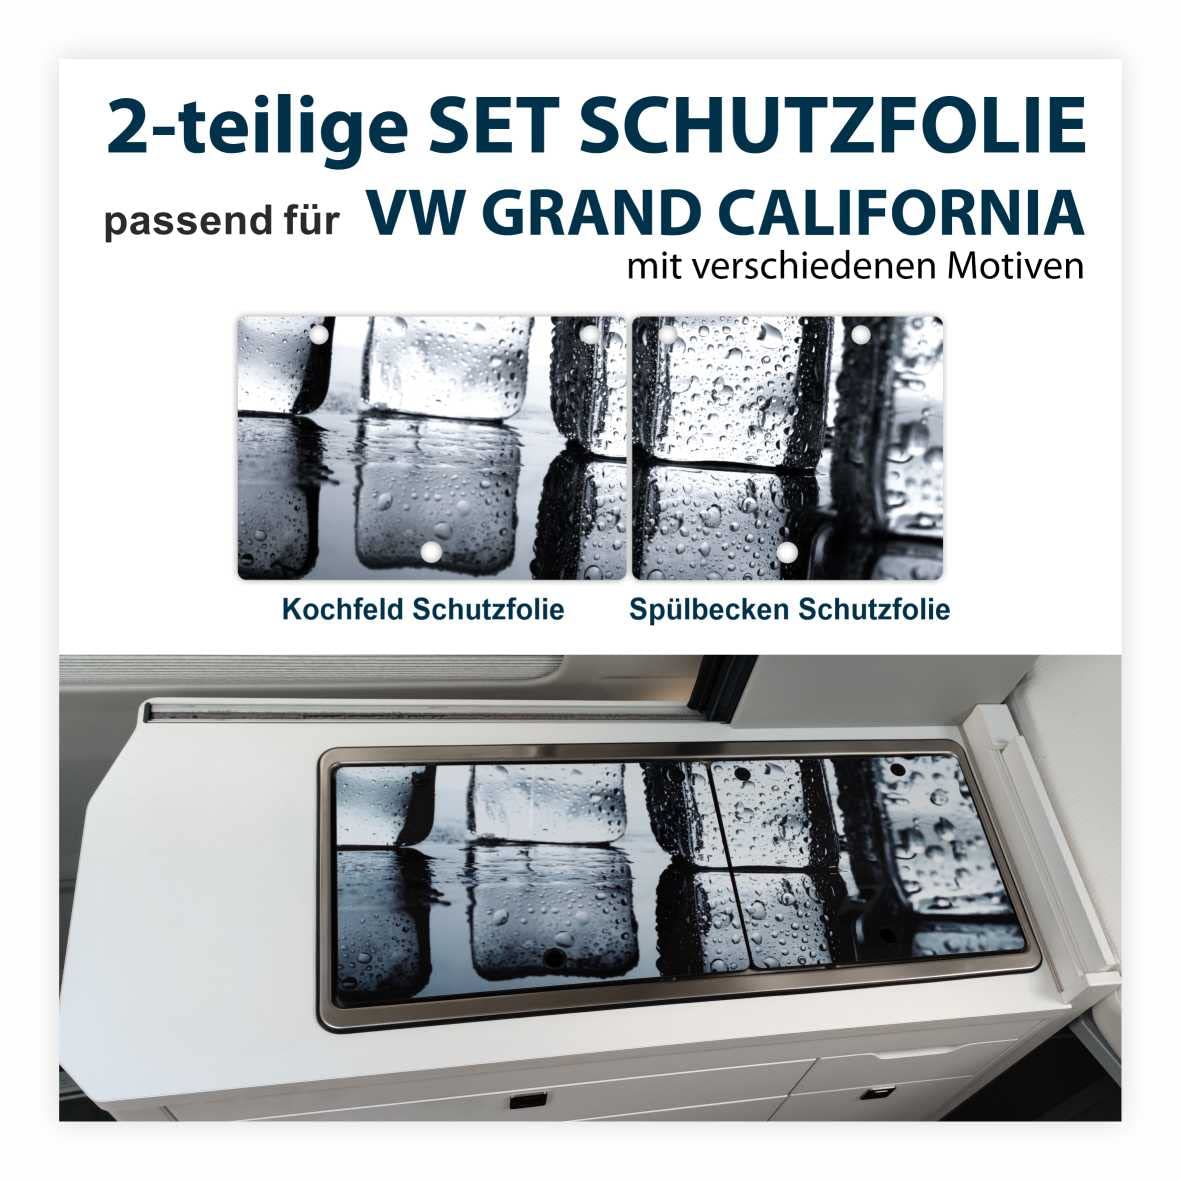 FOTOFOL Schutzfolien-Set passend für VW Grand California - Schutz für Glass-Abdeckung vom Kochfeld und Spülbecken mit verschiedenen Motiven - Schutz für Dein Camper von FOTOFOL